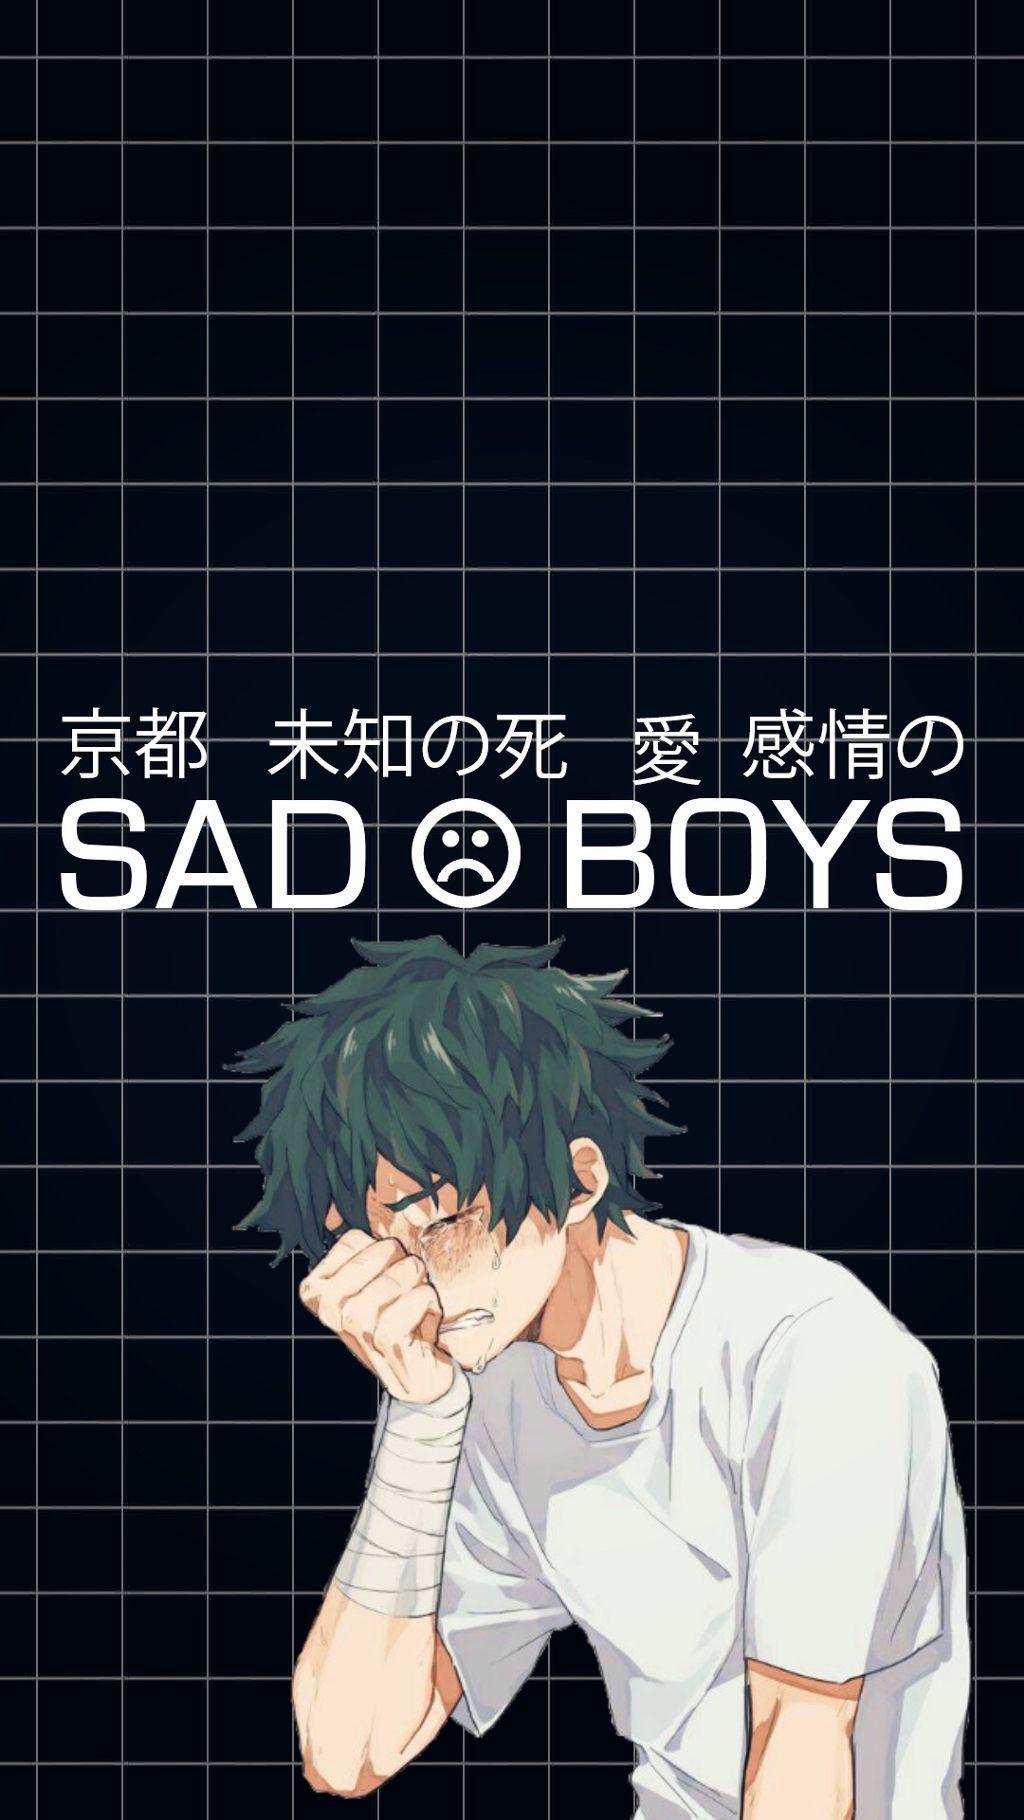 1024 x 1820 · jpeg - Sad Boys Anime Supreme Wallpapers - Wallpaper Cave